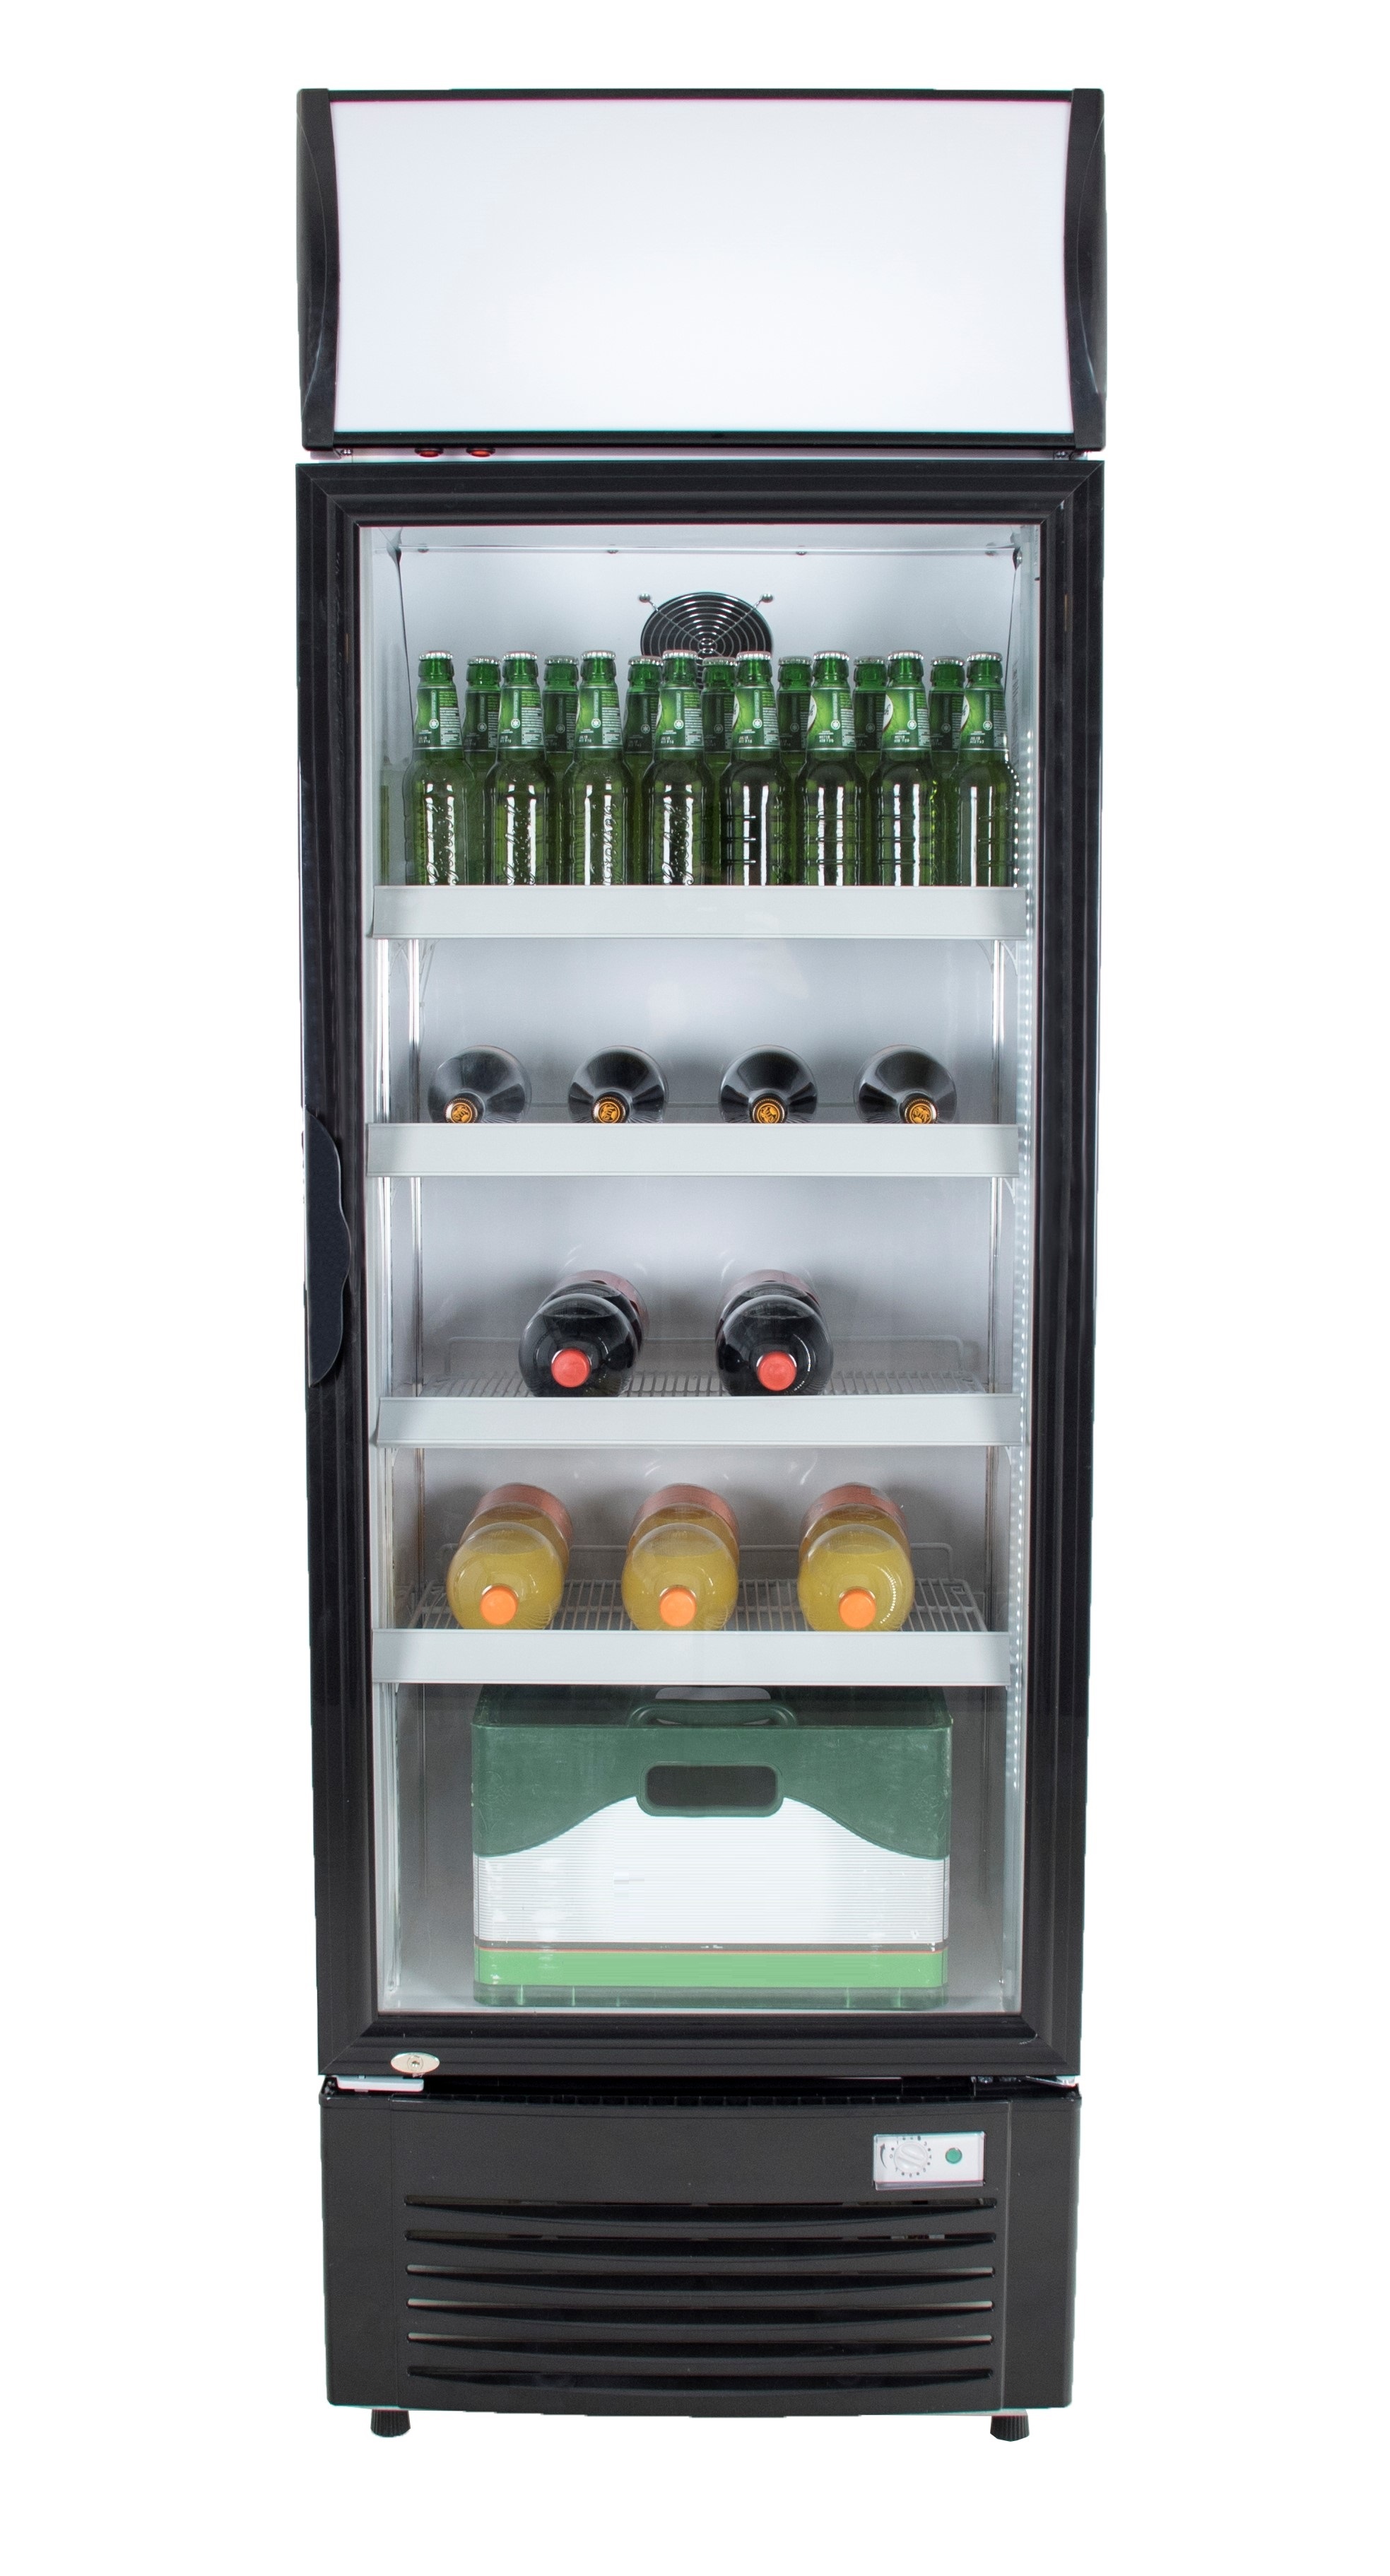 Display koelkast zwart - Inclusief display - 300 liter